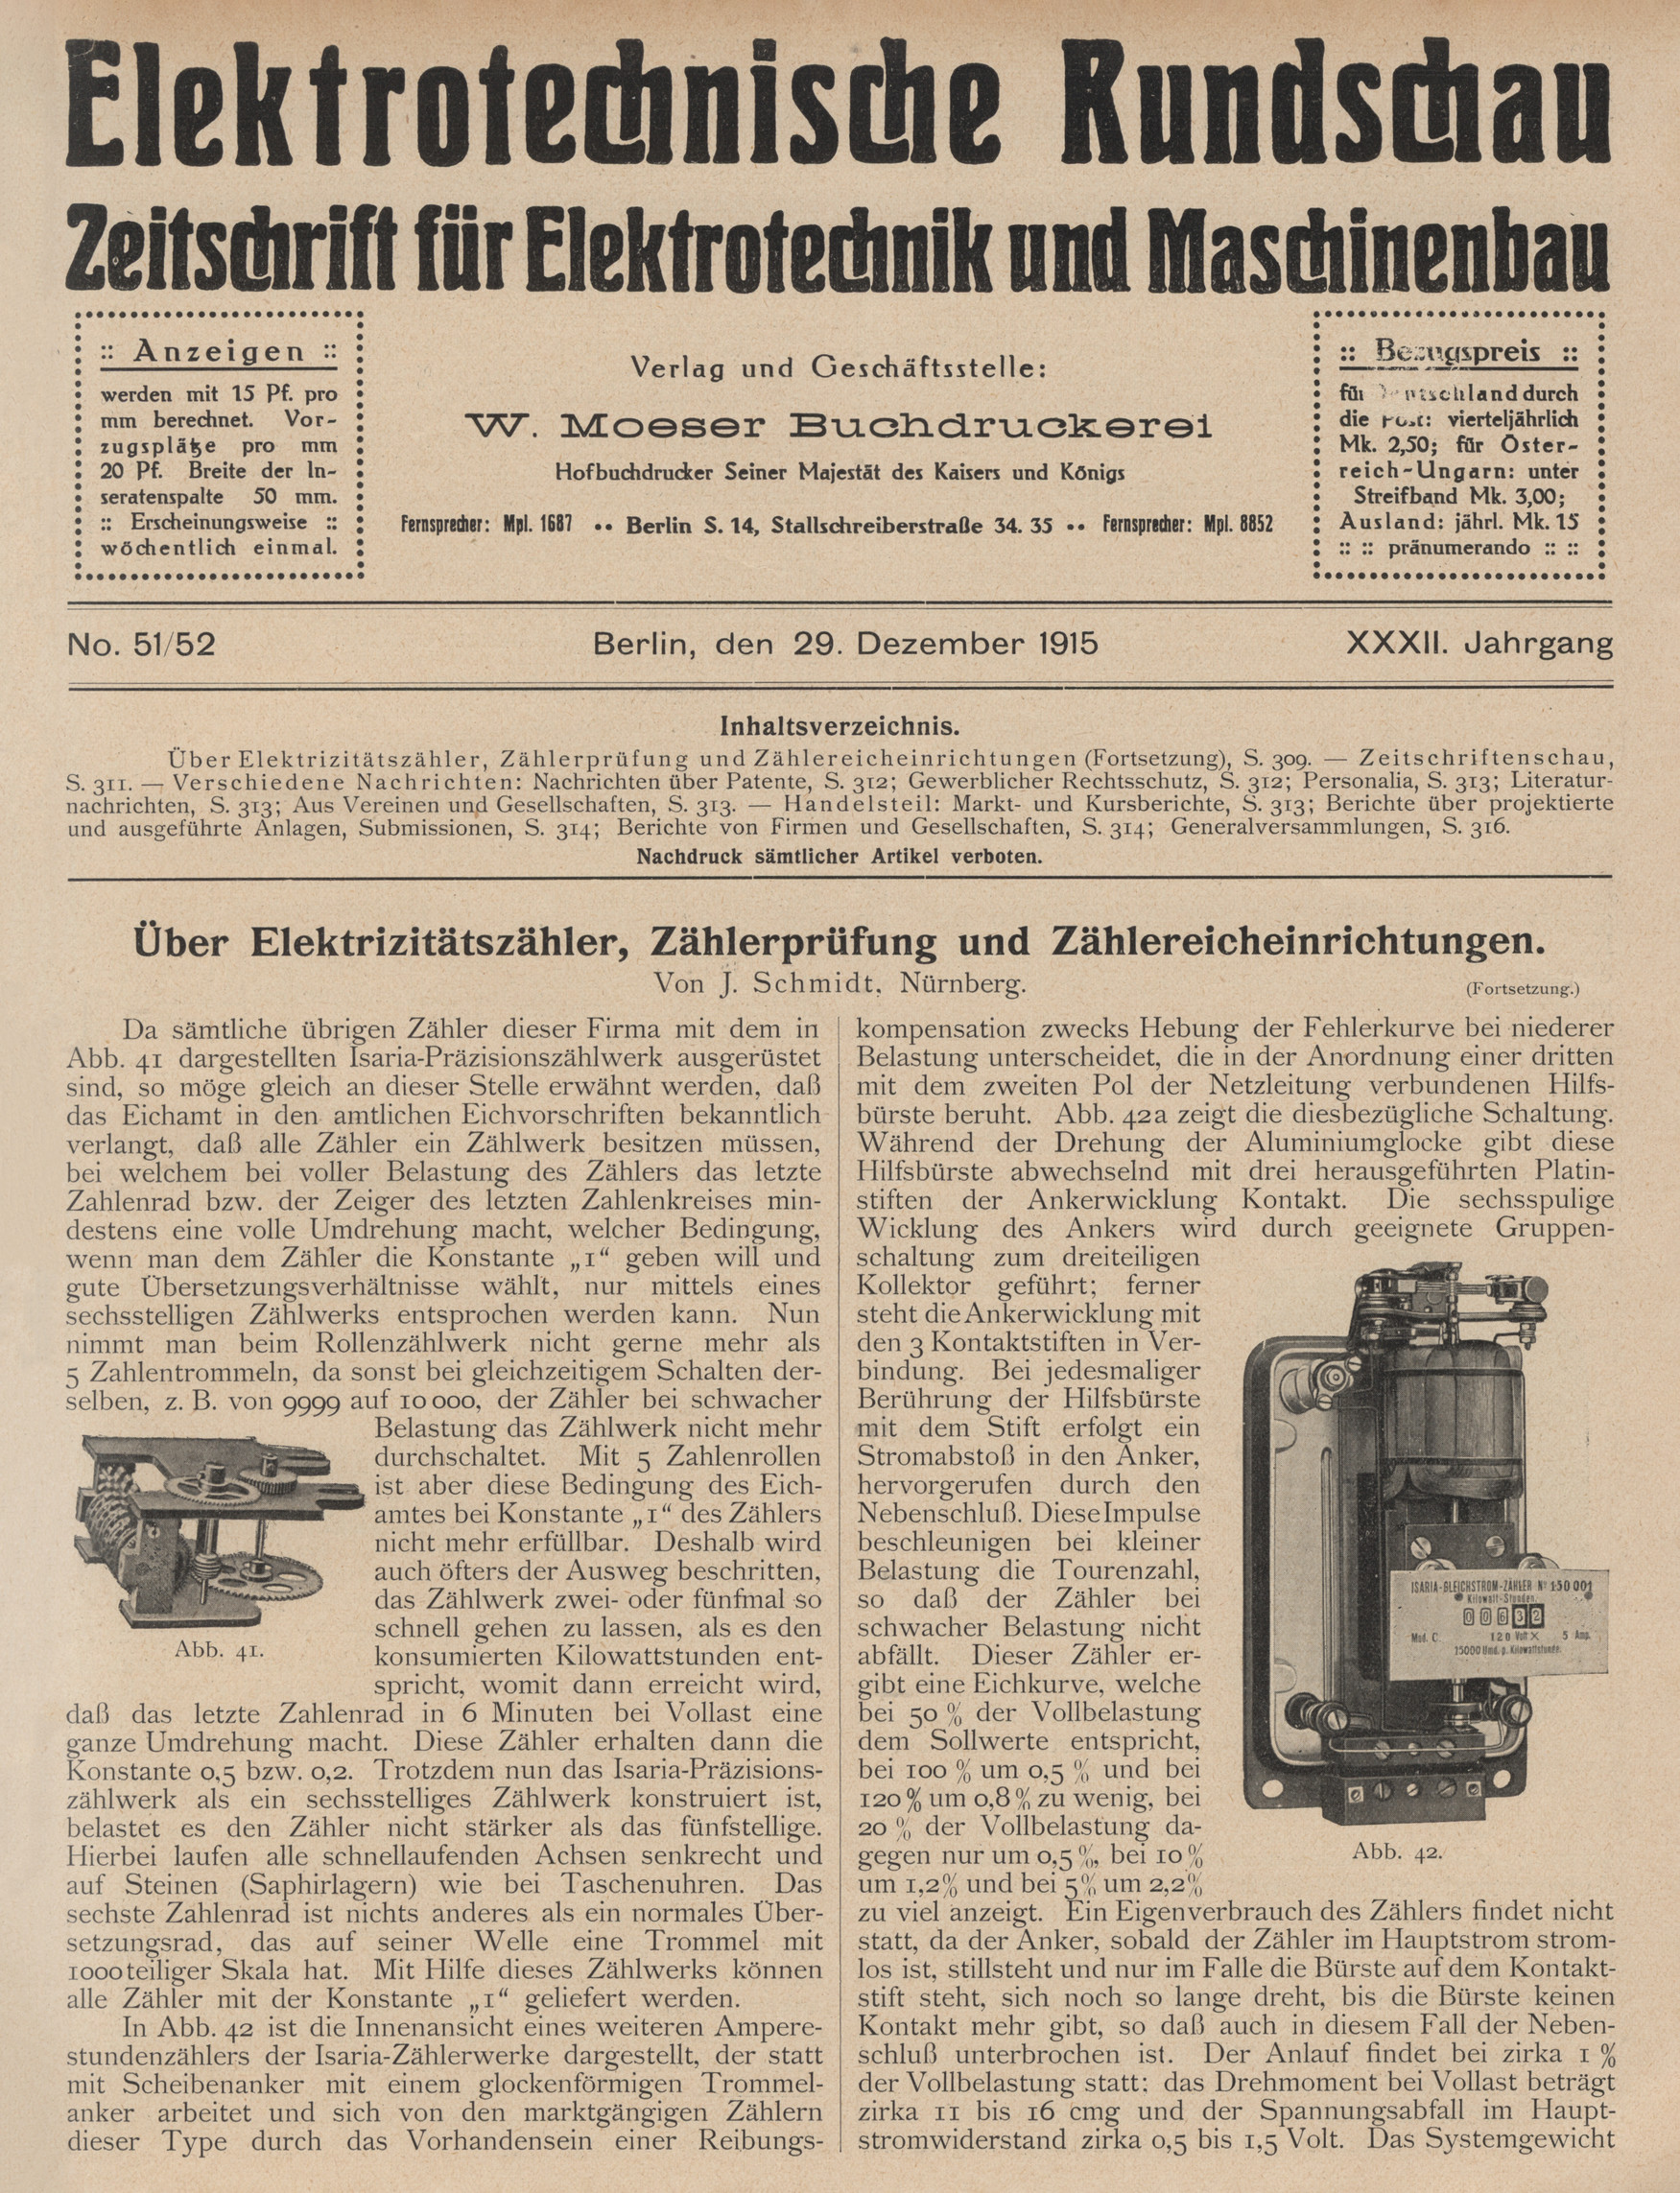 Elektrotechnische Rundschau : Zeitschrift für Elektrotechnik und Maschinenbau + Polytechnische Rundschau, No. 51/52, XXXII. Jahrgang